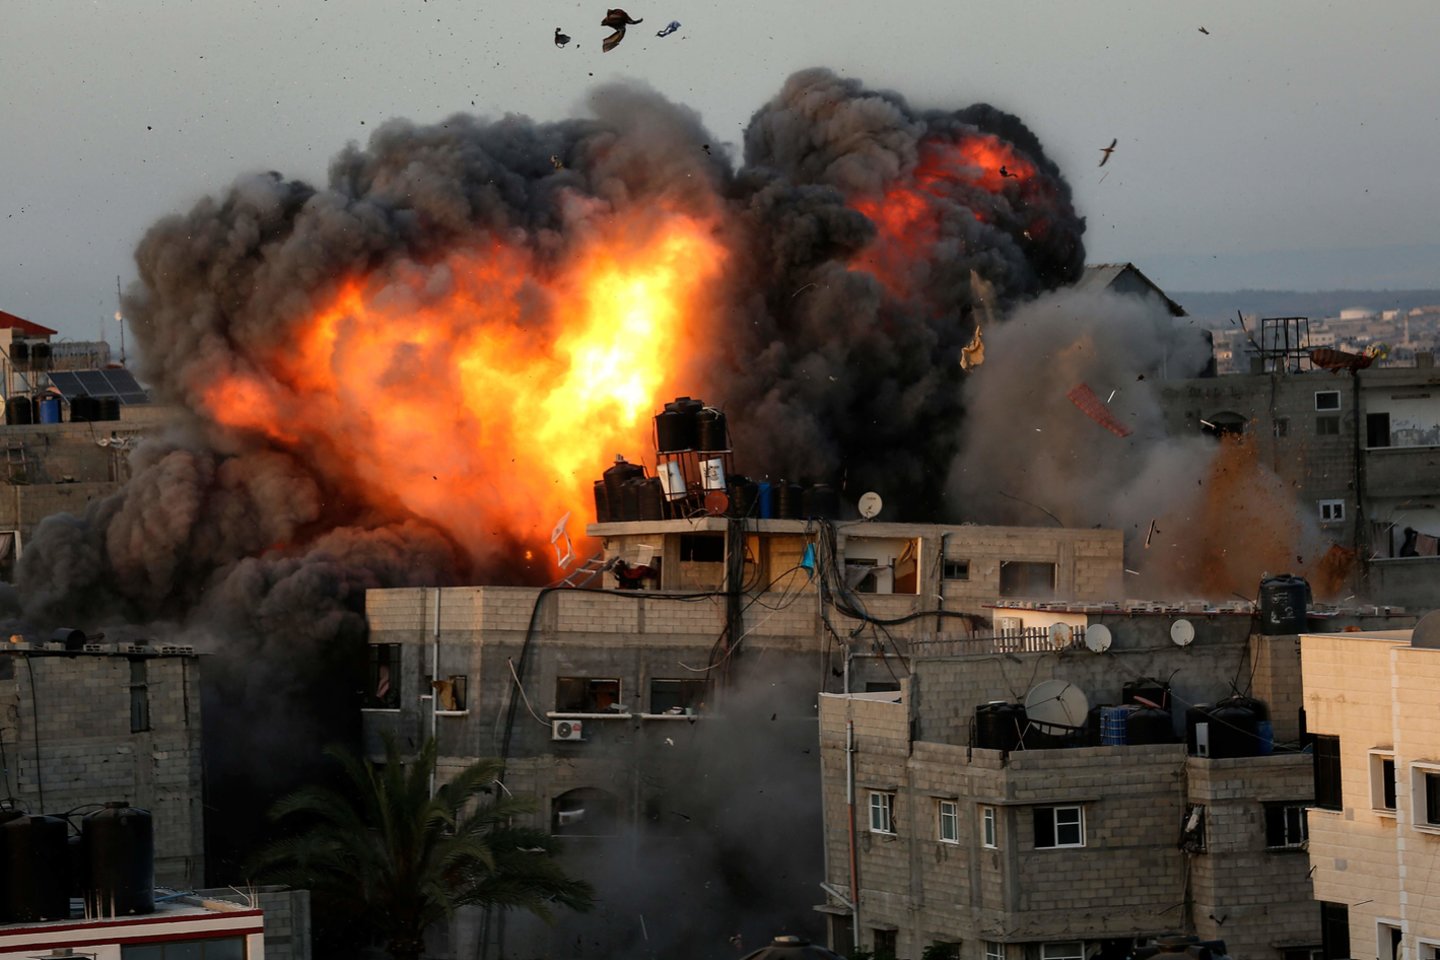  JT teisių taryba inicijuoja tyrimą dėl pažeidimų Izraelyje, palestiniečių teritorijose.<br>AFP/Scanpix nuotr.